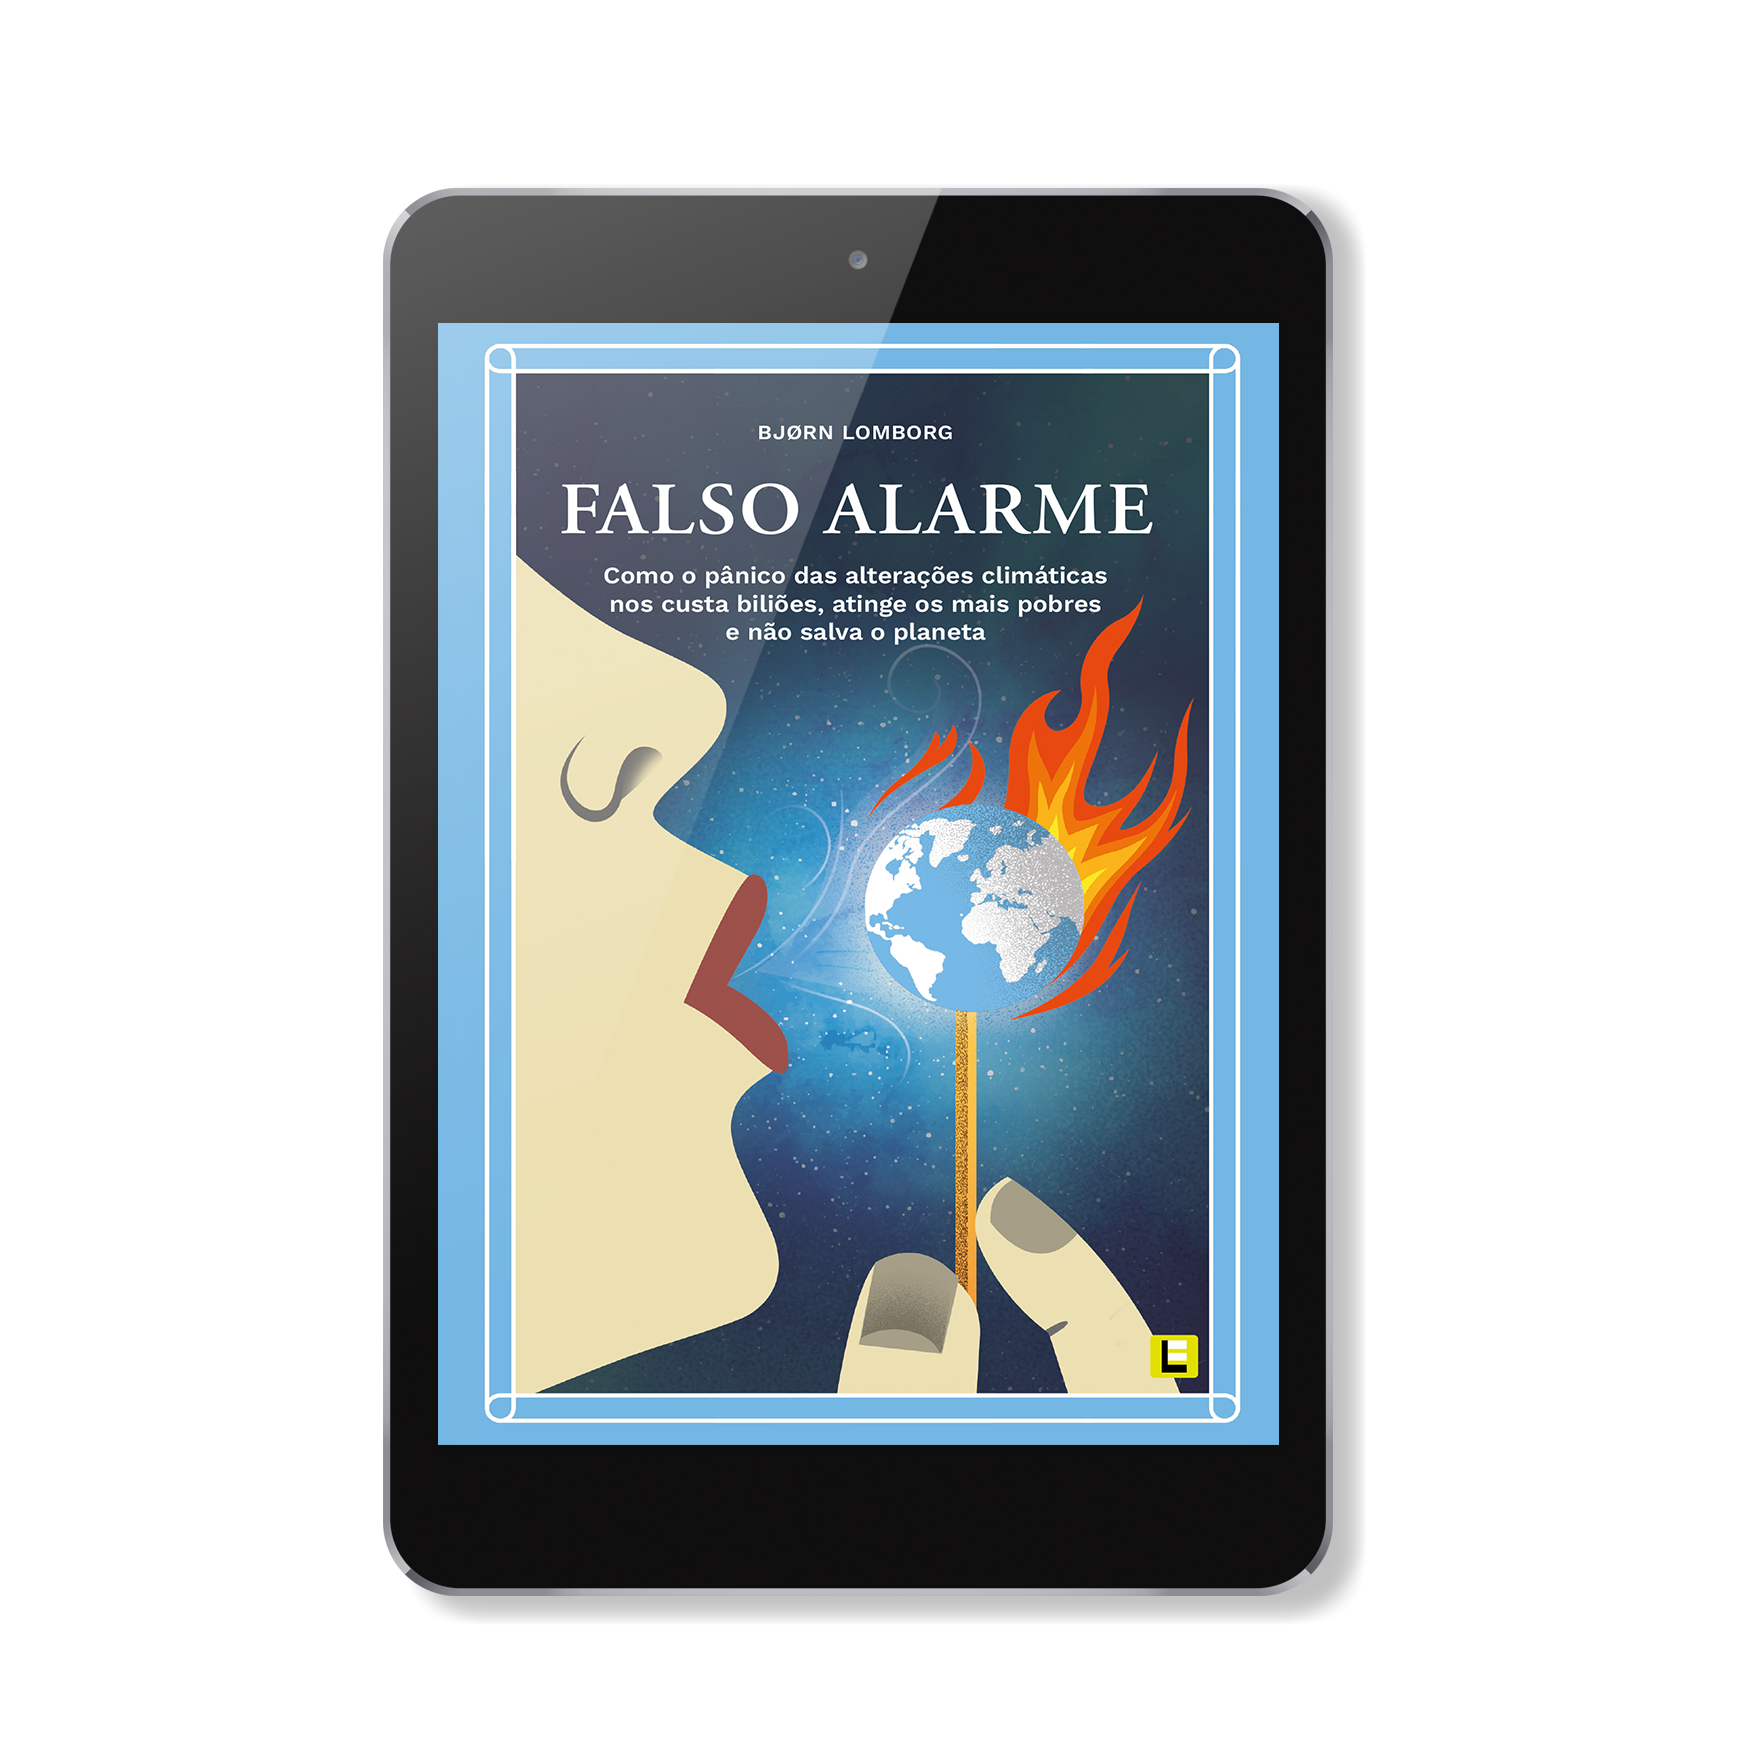 Capa do livro "Falso Alarme" de Bjorn Lomborg em formato ebook